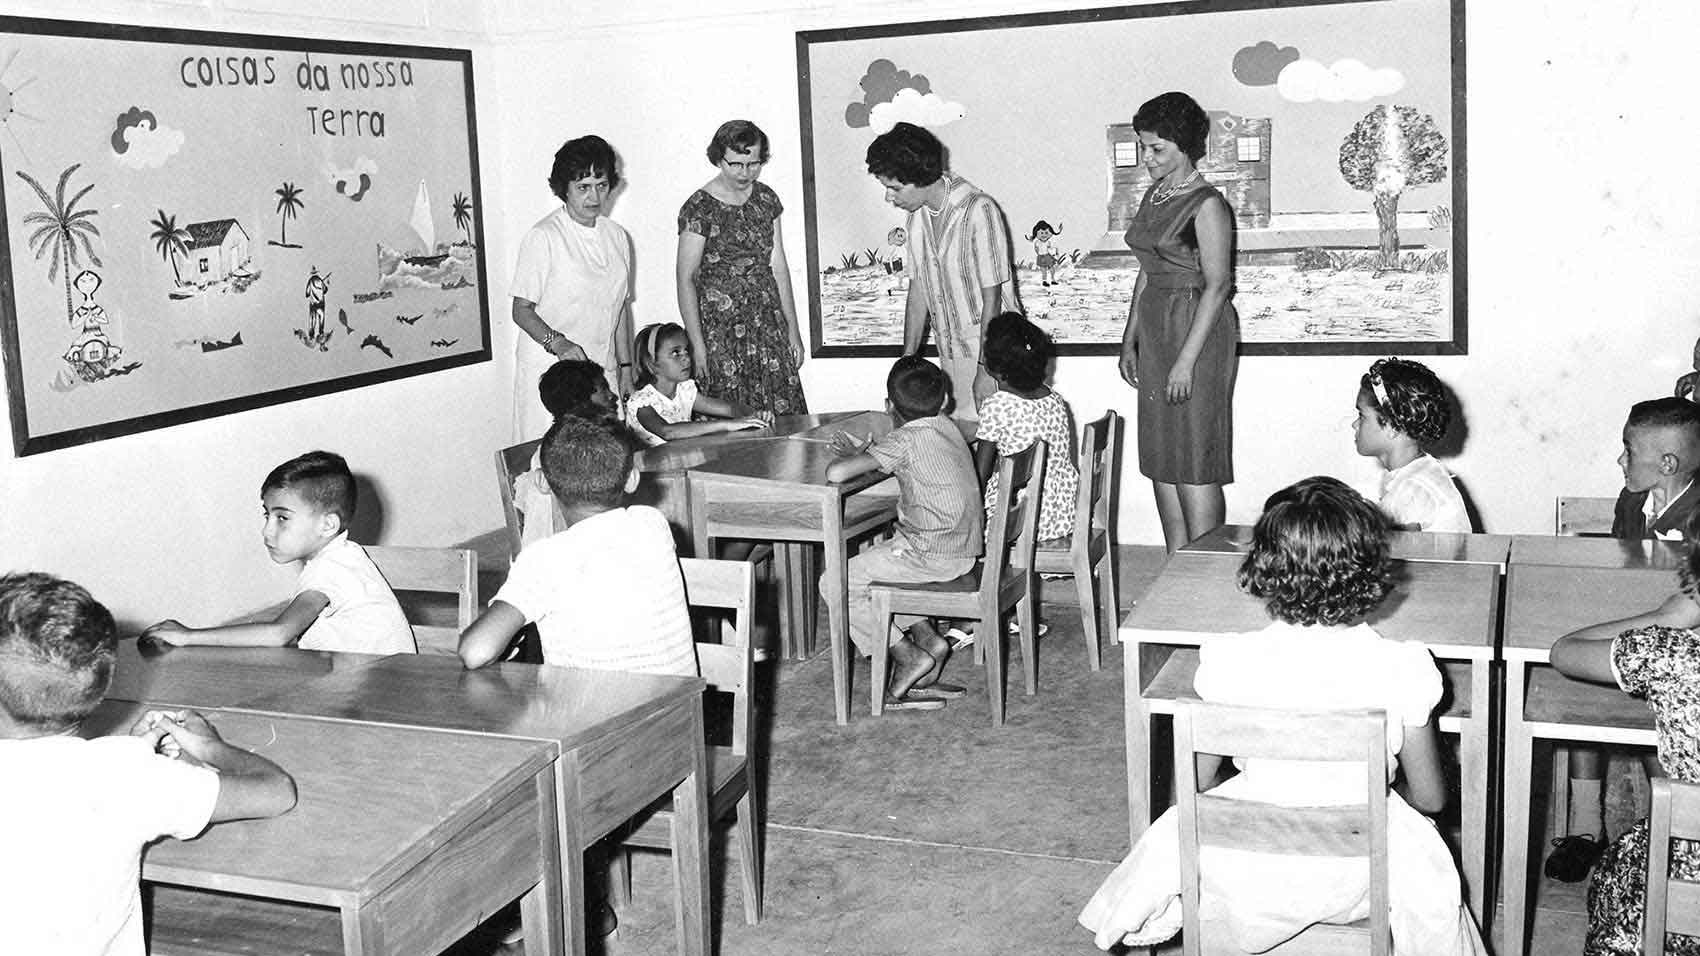 La Escola Johnson cuando se fundó en la década de 1960